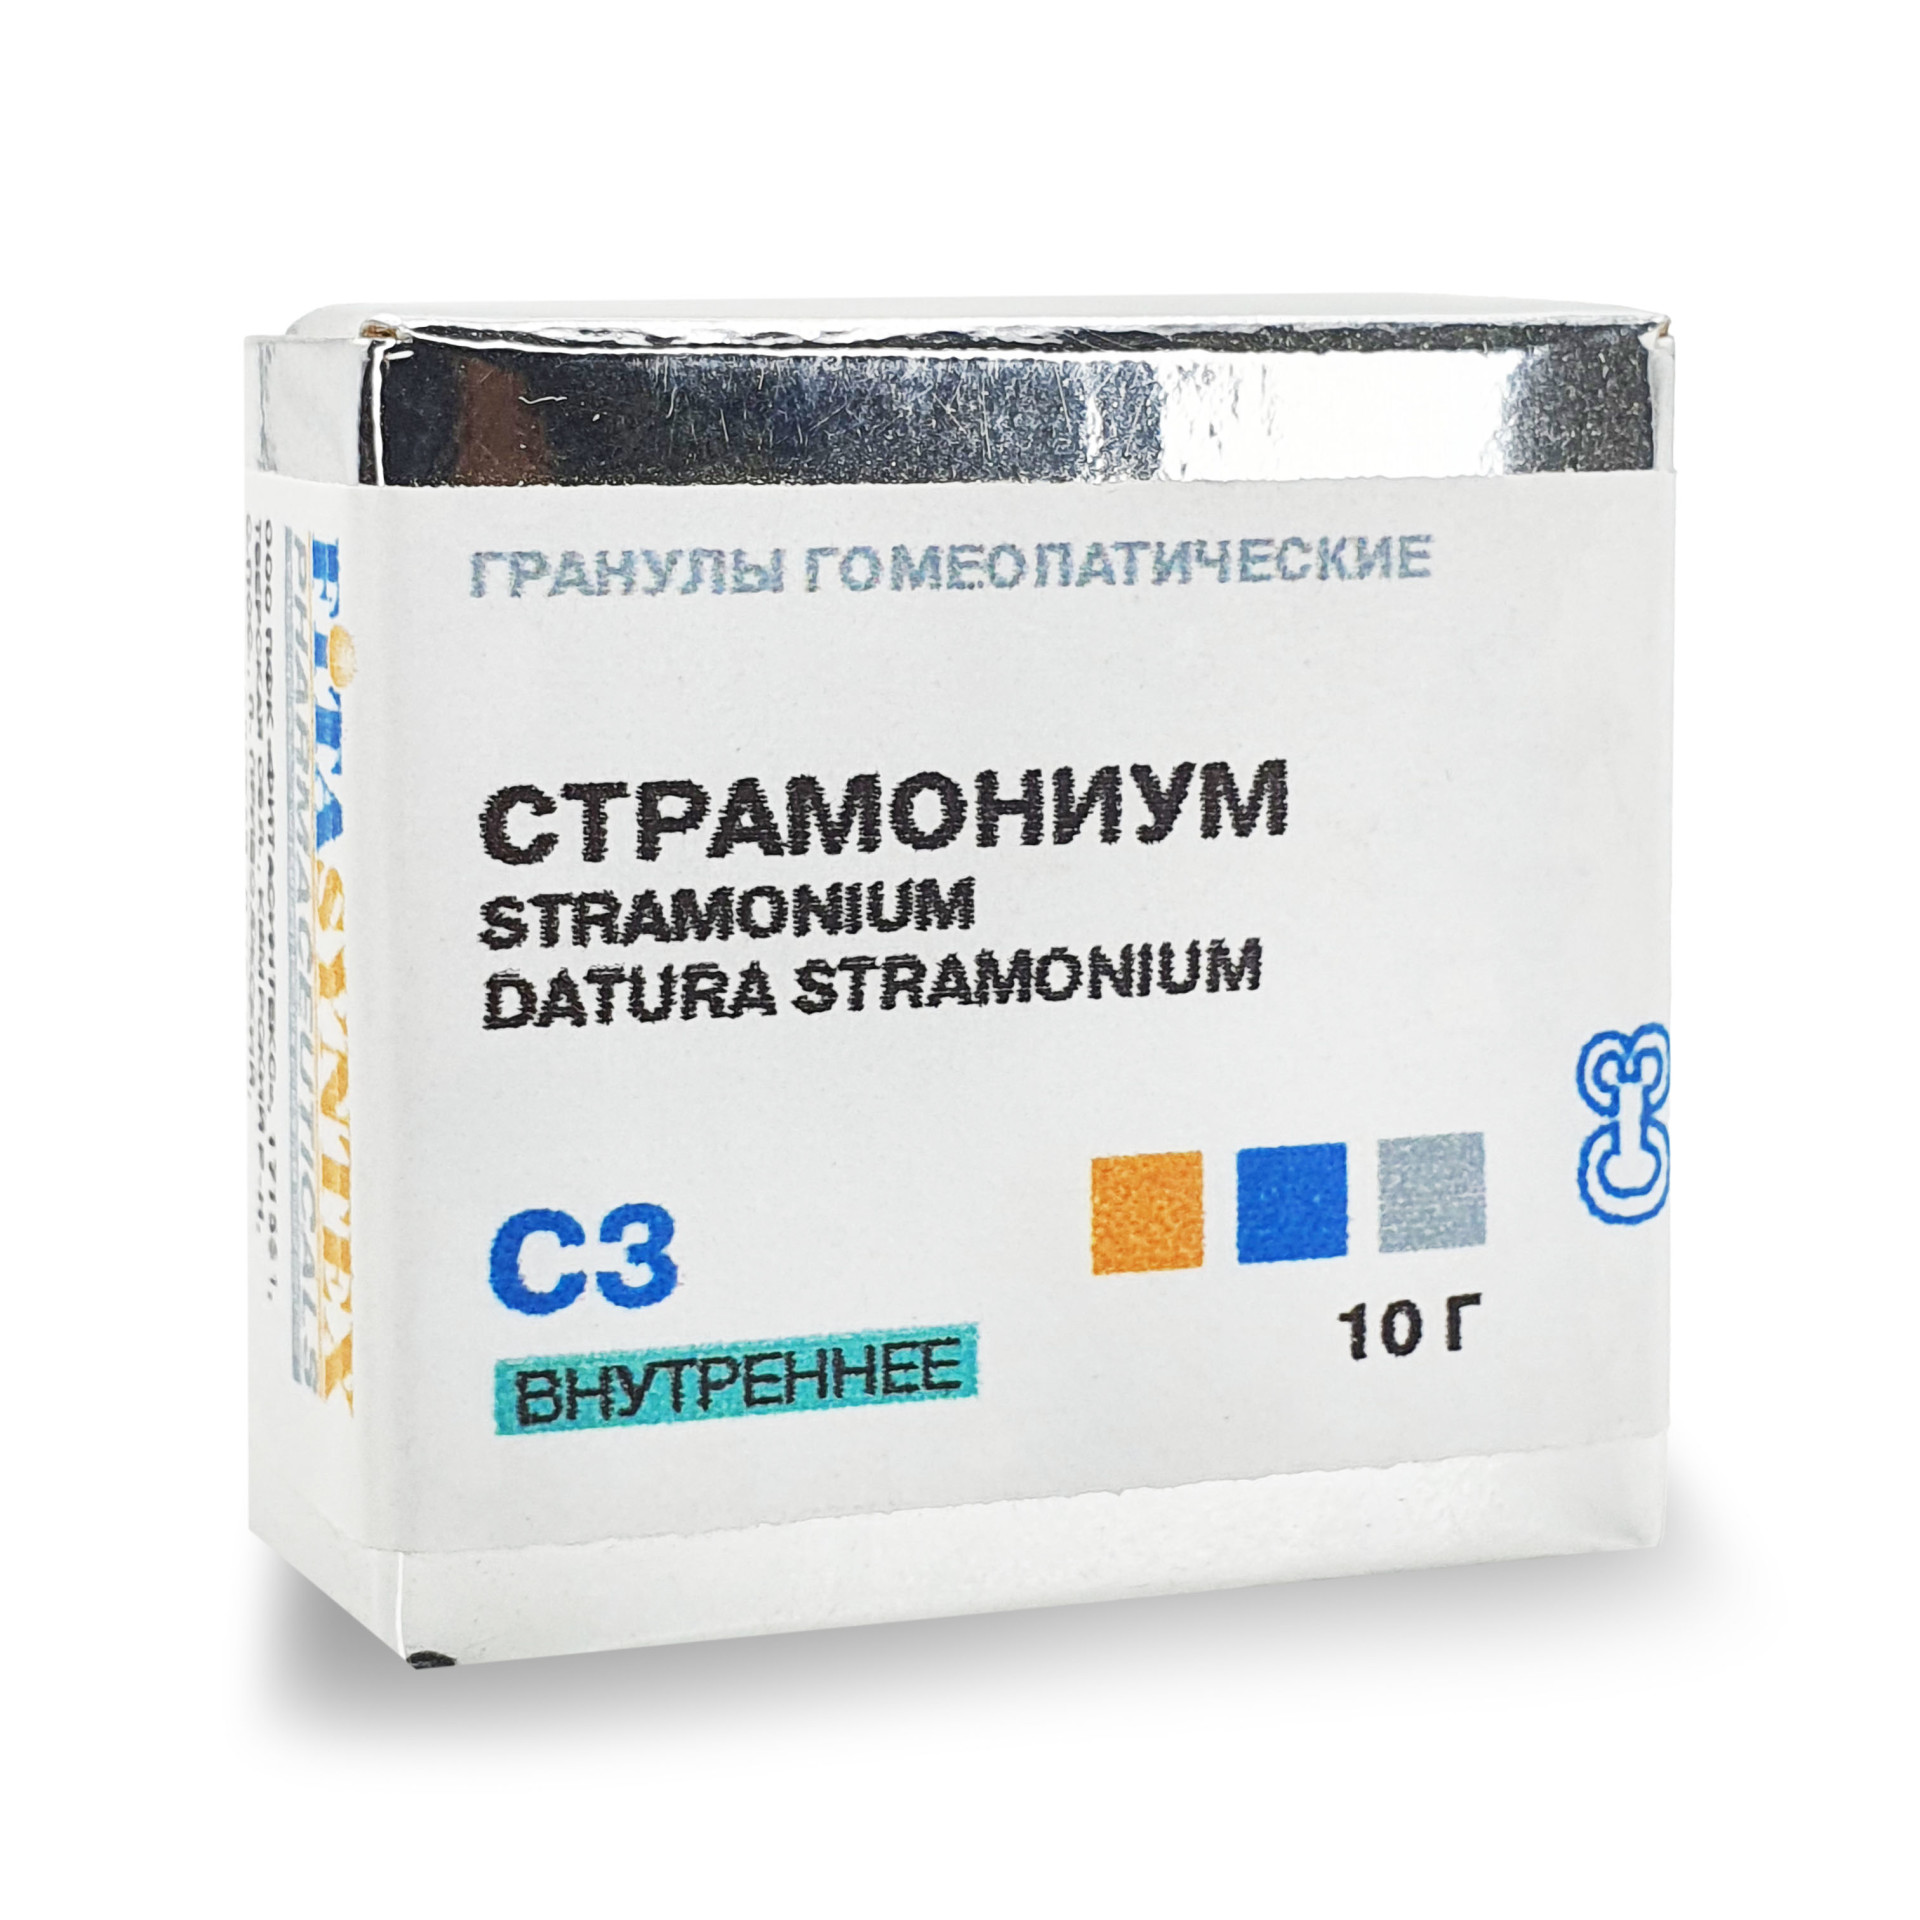 Страмониум (Датура Страмониум) С-3 гранулы 10г  в Пересвете по .